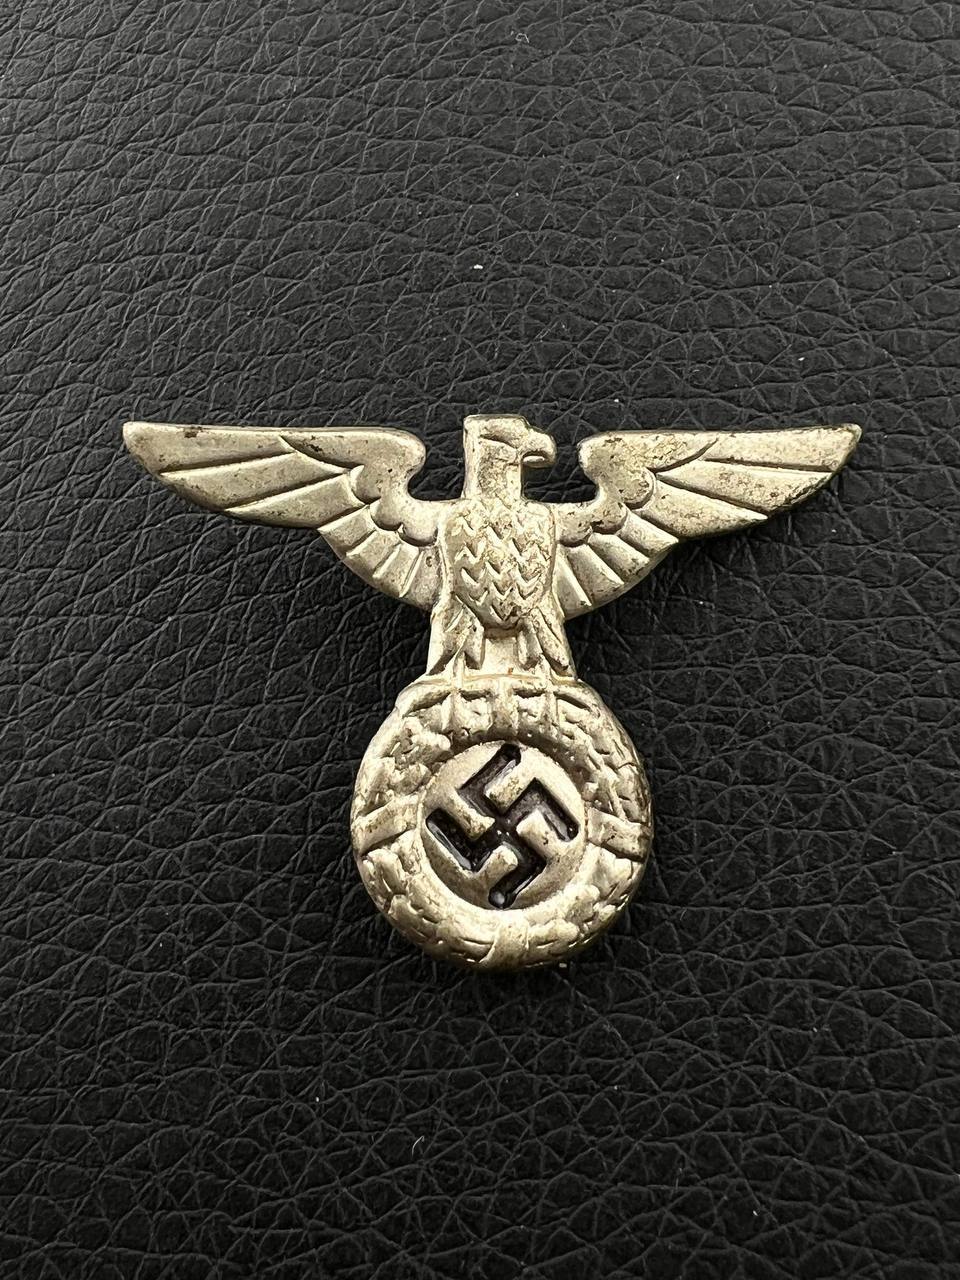 Ранний (обр. 1934 года) орёл-кокарда с фуражки руководителя НСДАП или кепи СС.